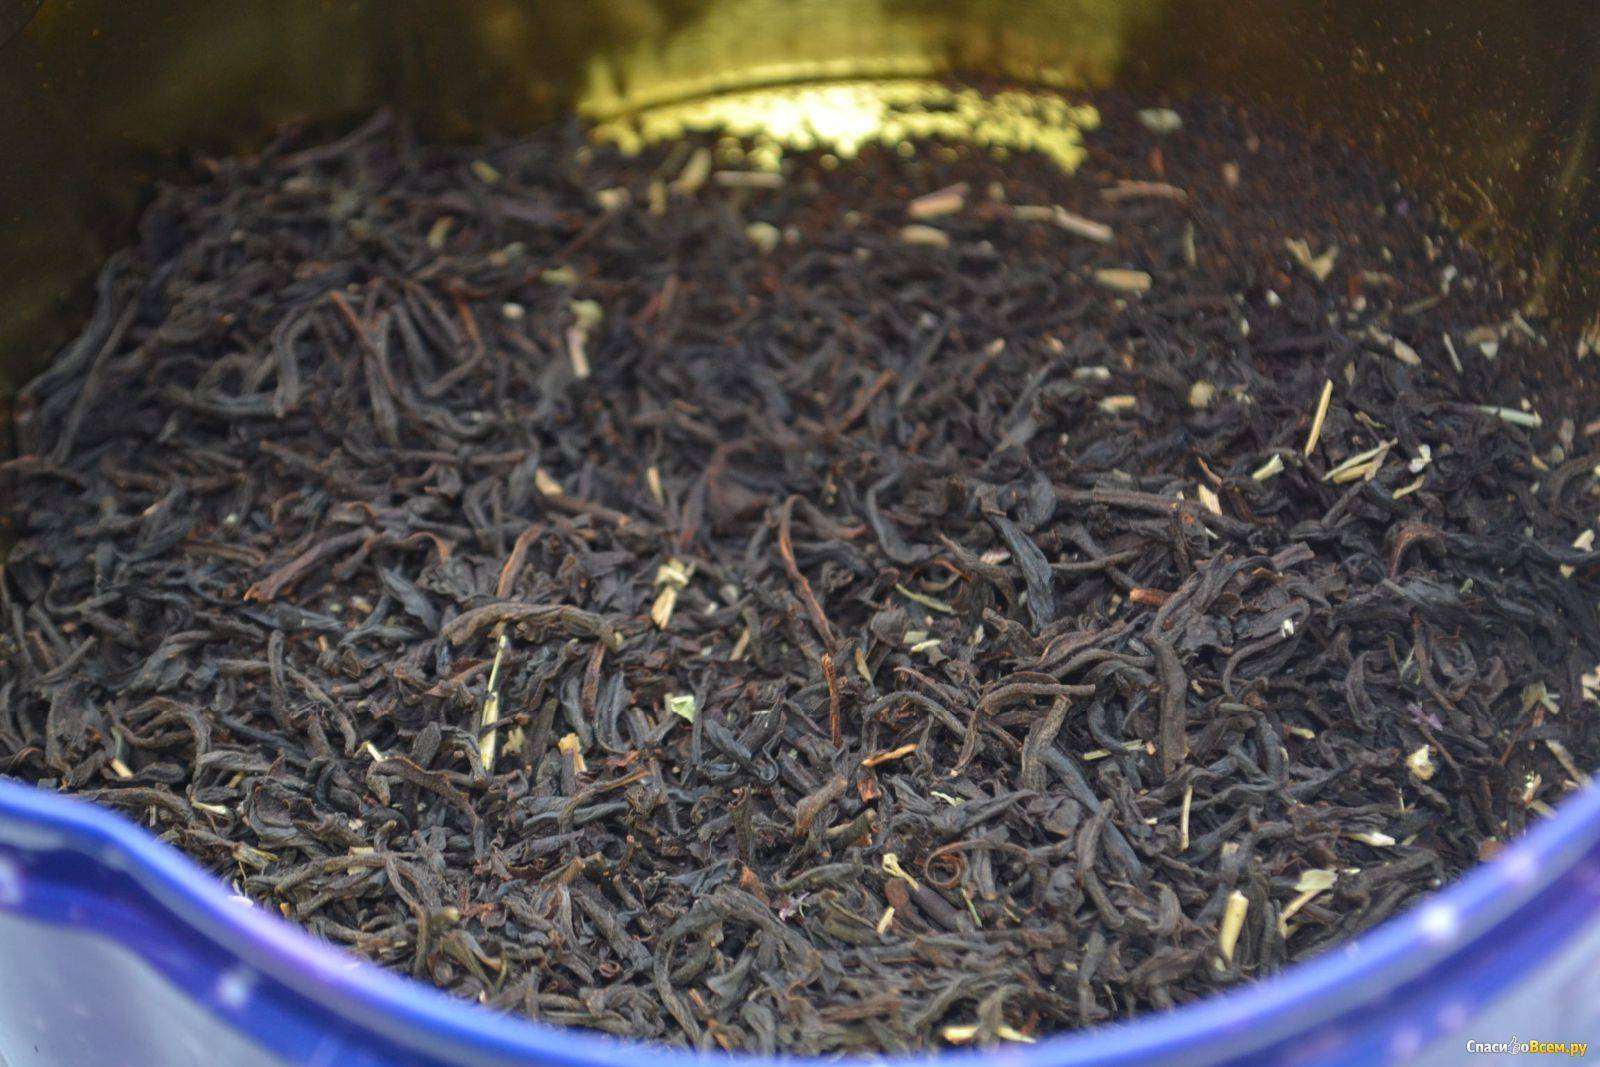 Байховый чай: что это такое, 5 видов и марки производителей